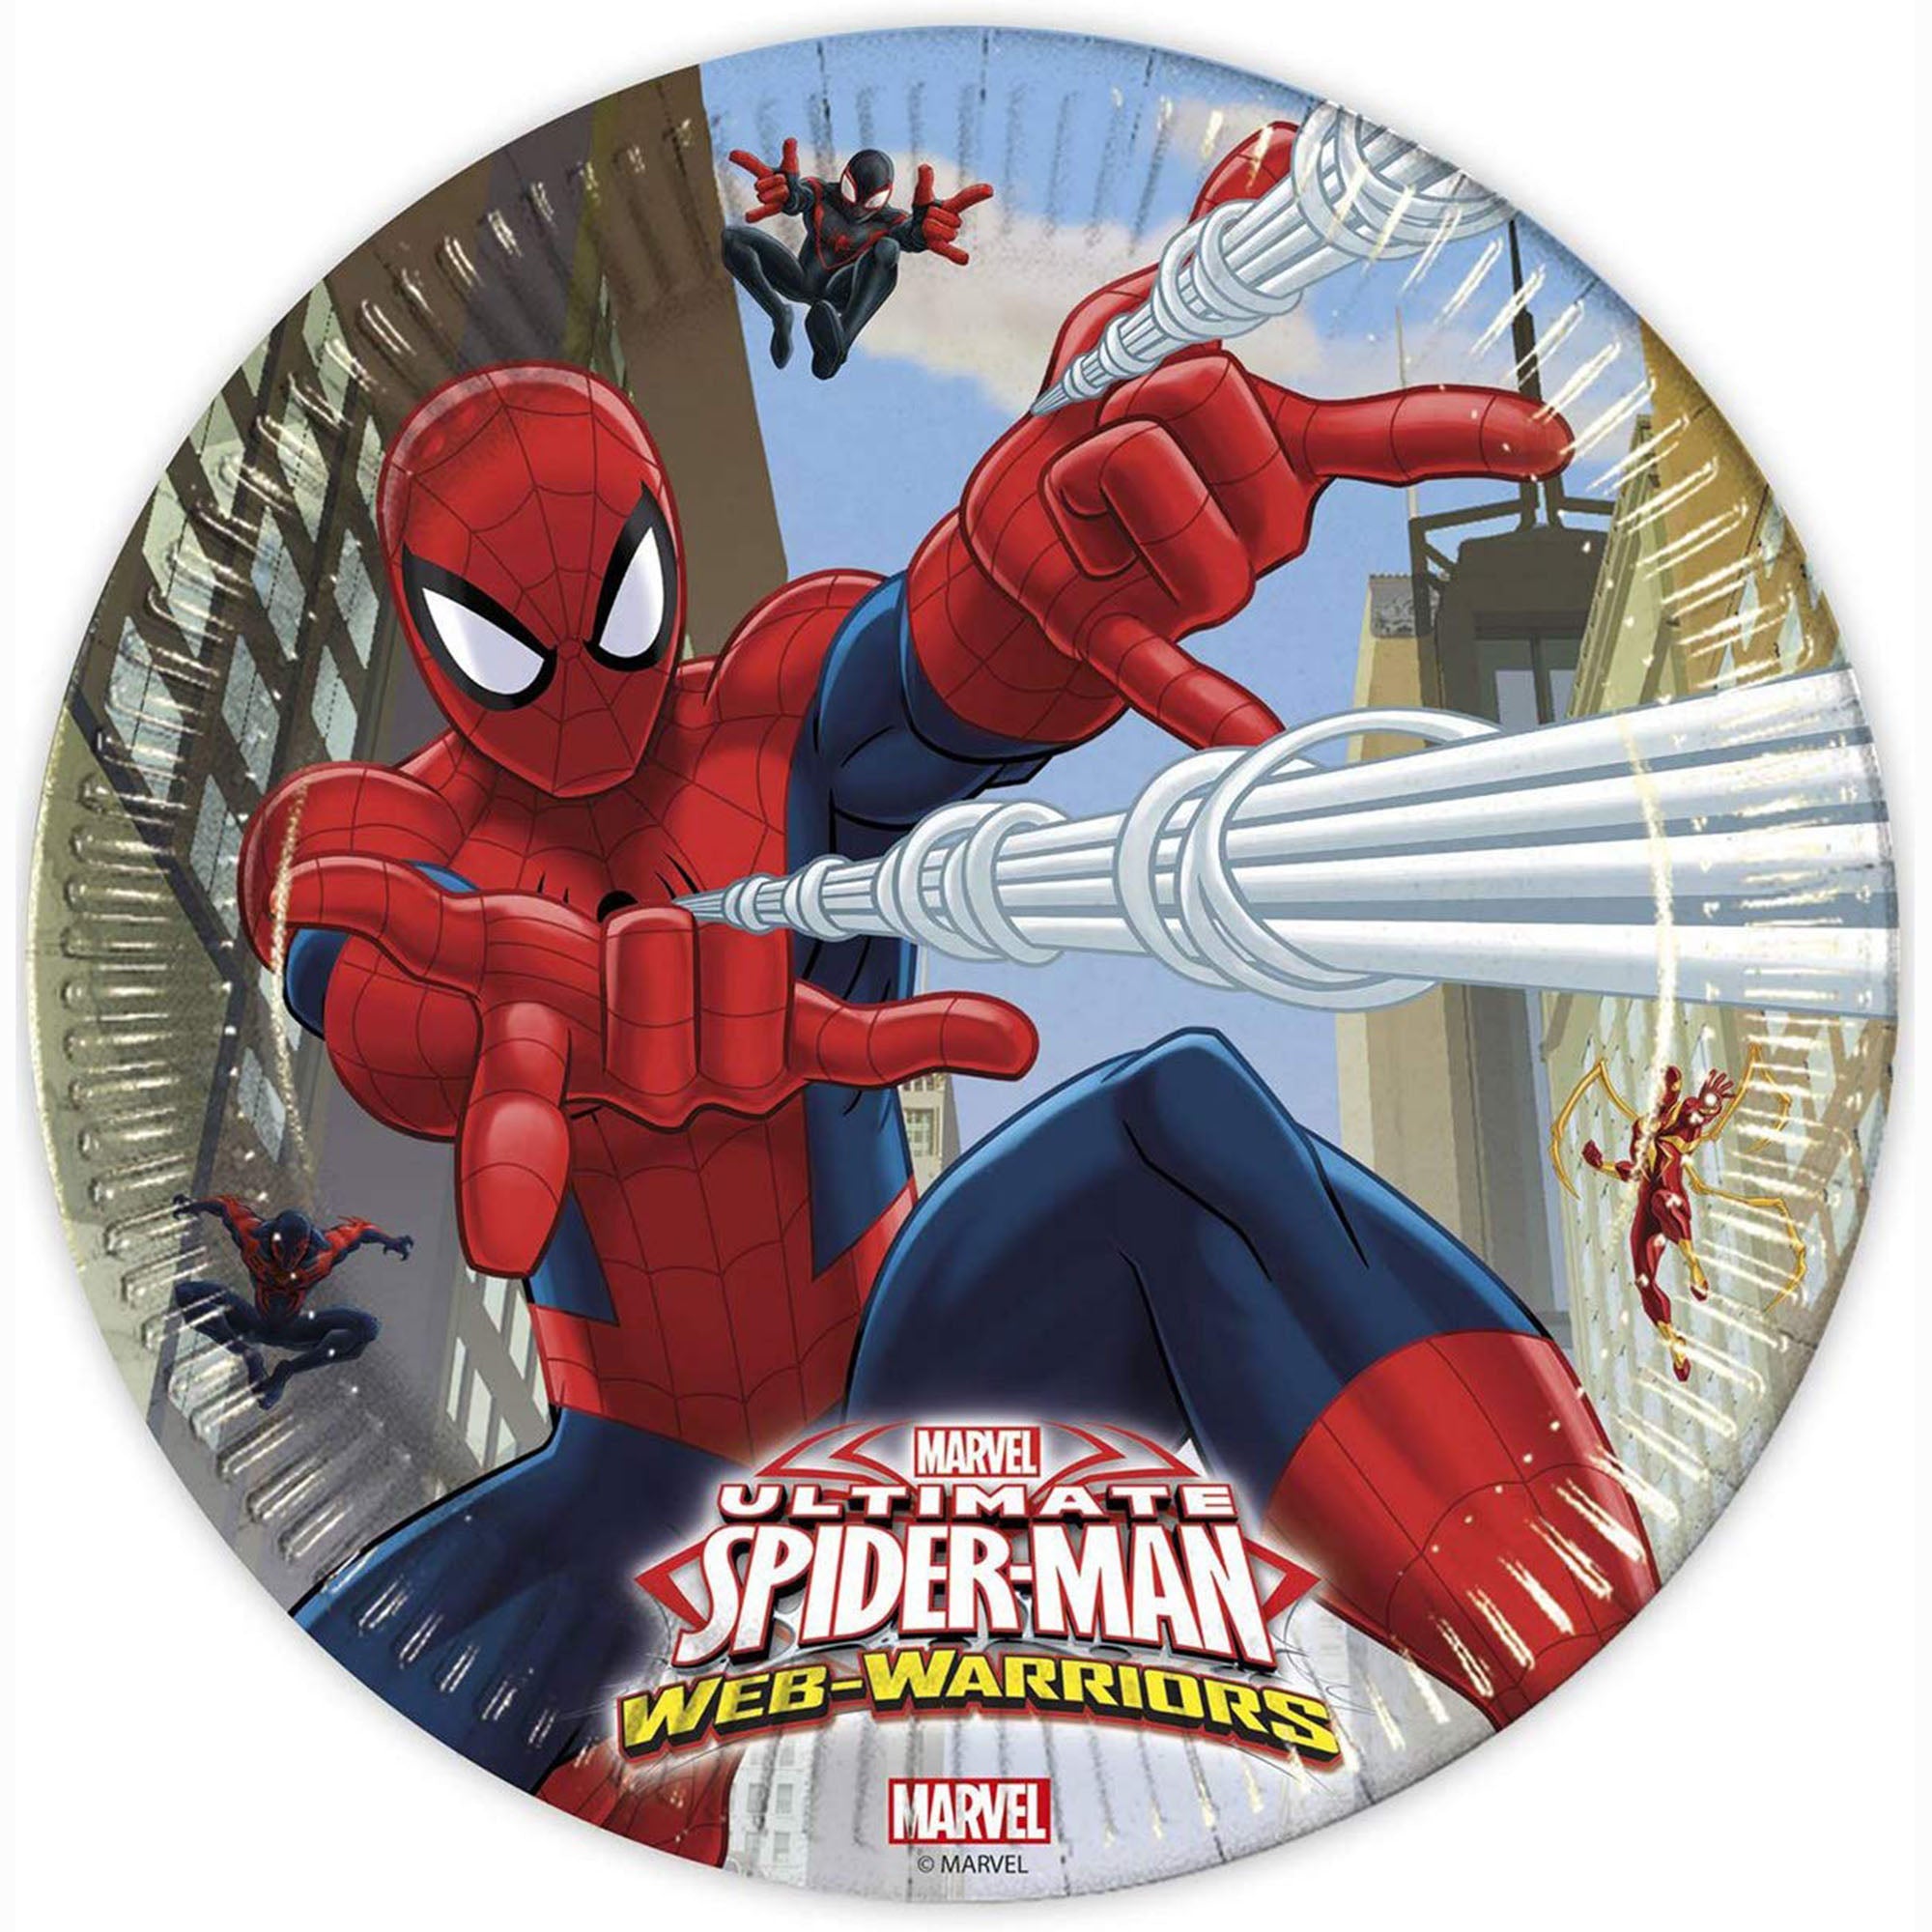 Kit party Marvel Spiderman 24 persone bicchieri piatti tovaglia tovaglioli 1394